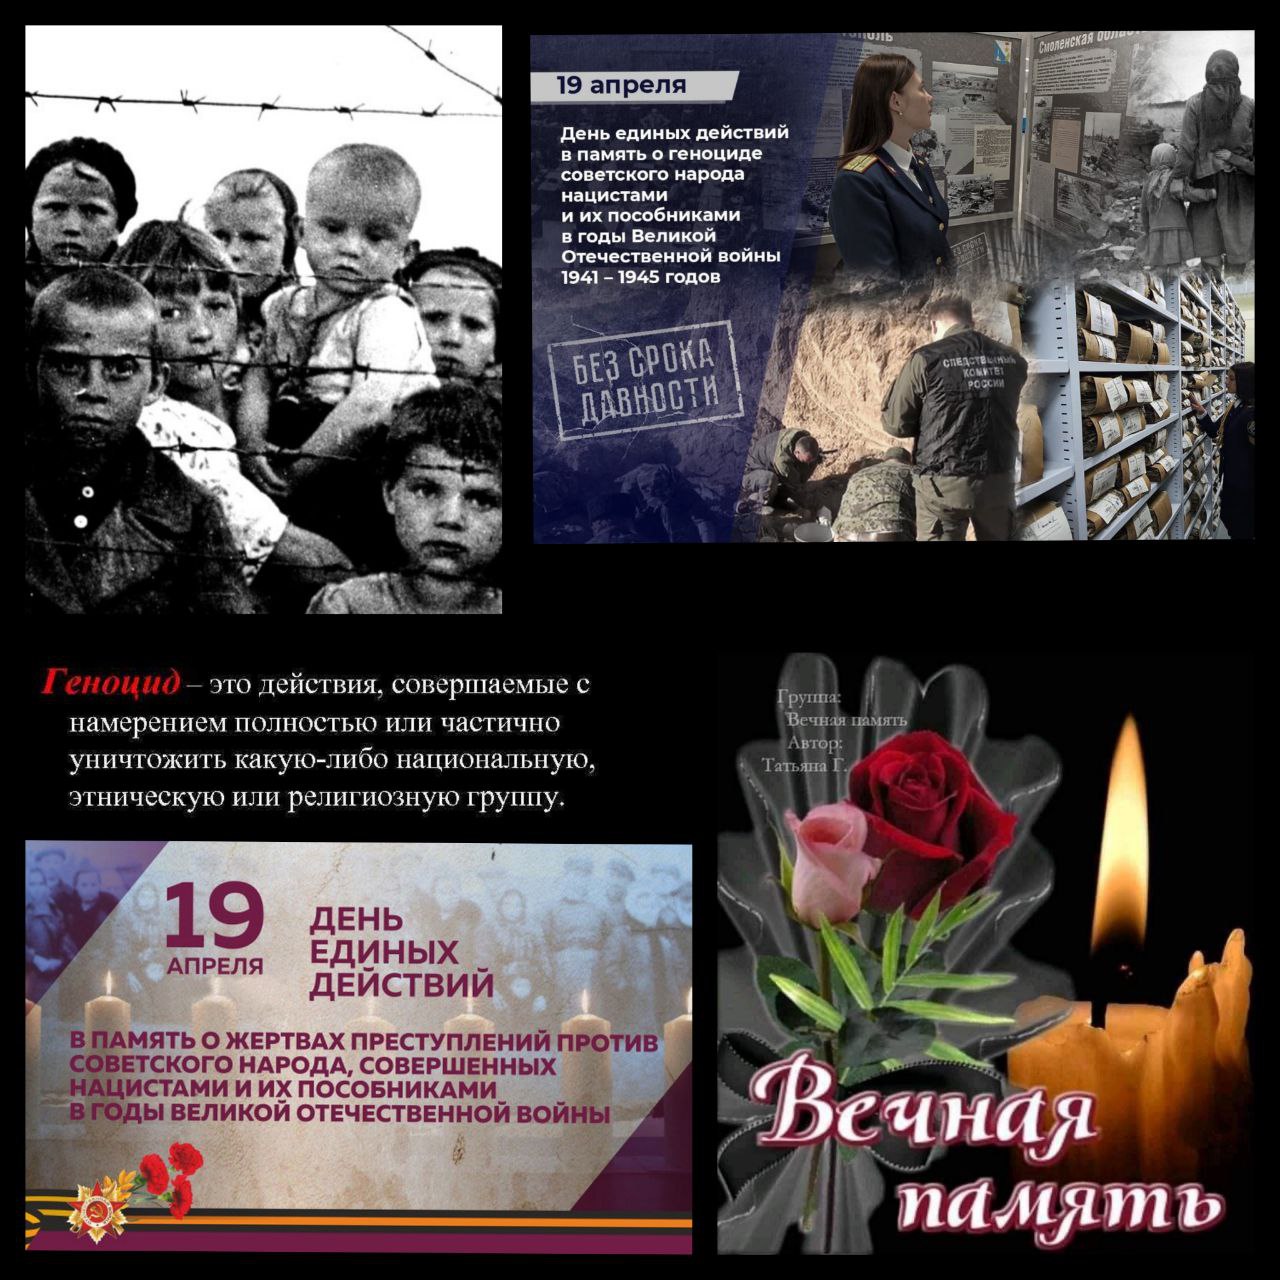 19 апреля геноцид советского народа. День единых действий в память о геноциде картинки.